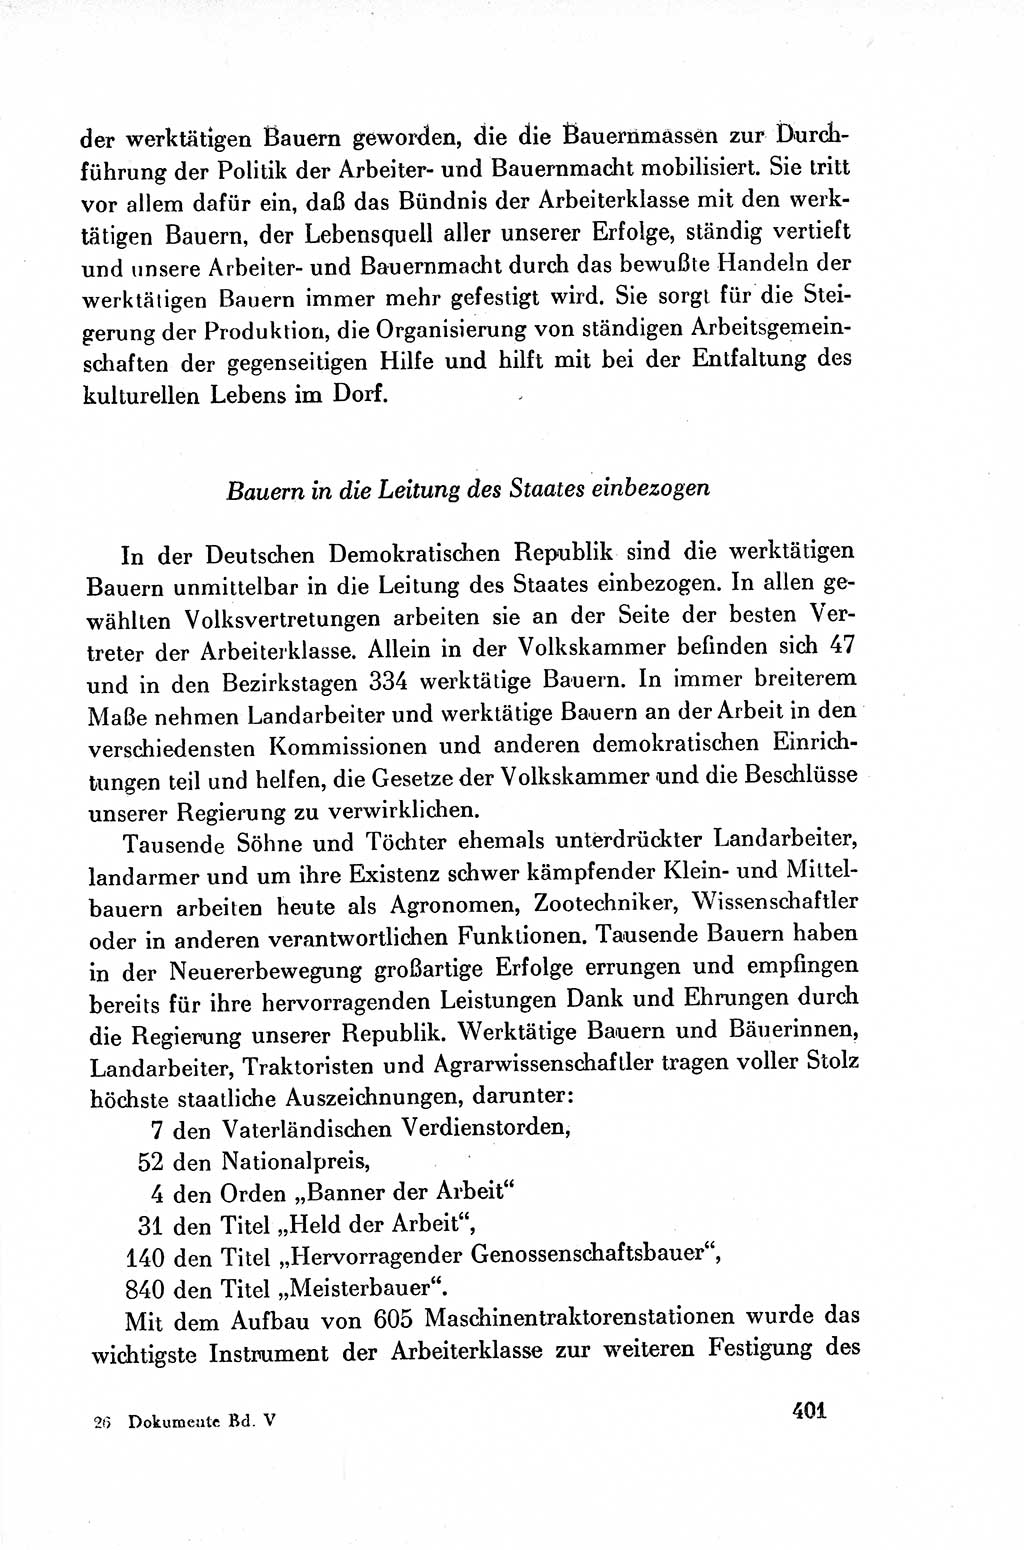 Dokumente der Sozialistischen Einheitspartei Deutschlands (SED) [Deutsche Demokratische Republik (DDR)] 1954-1955, Seite 401 (Dok. SED DDR 1954-1955, S. 401)